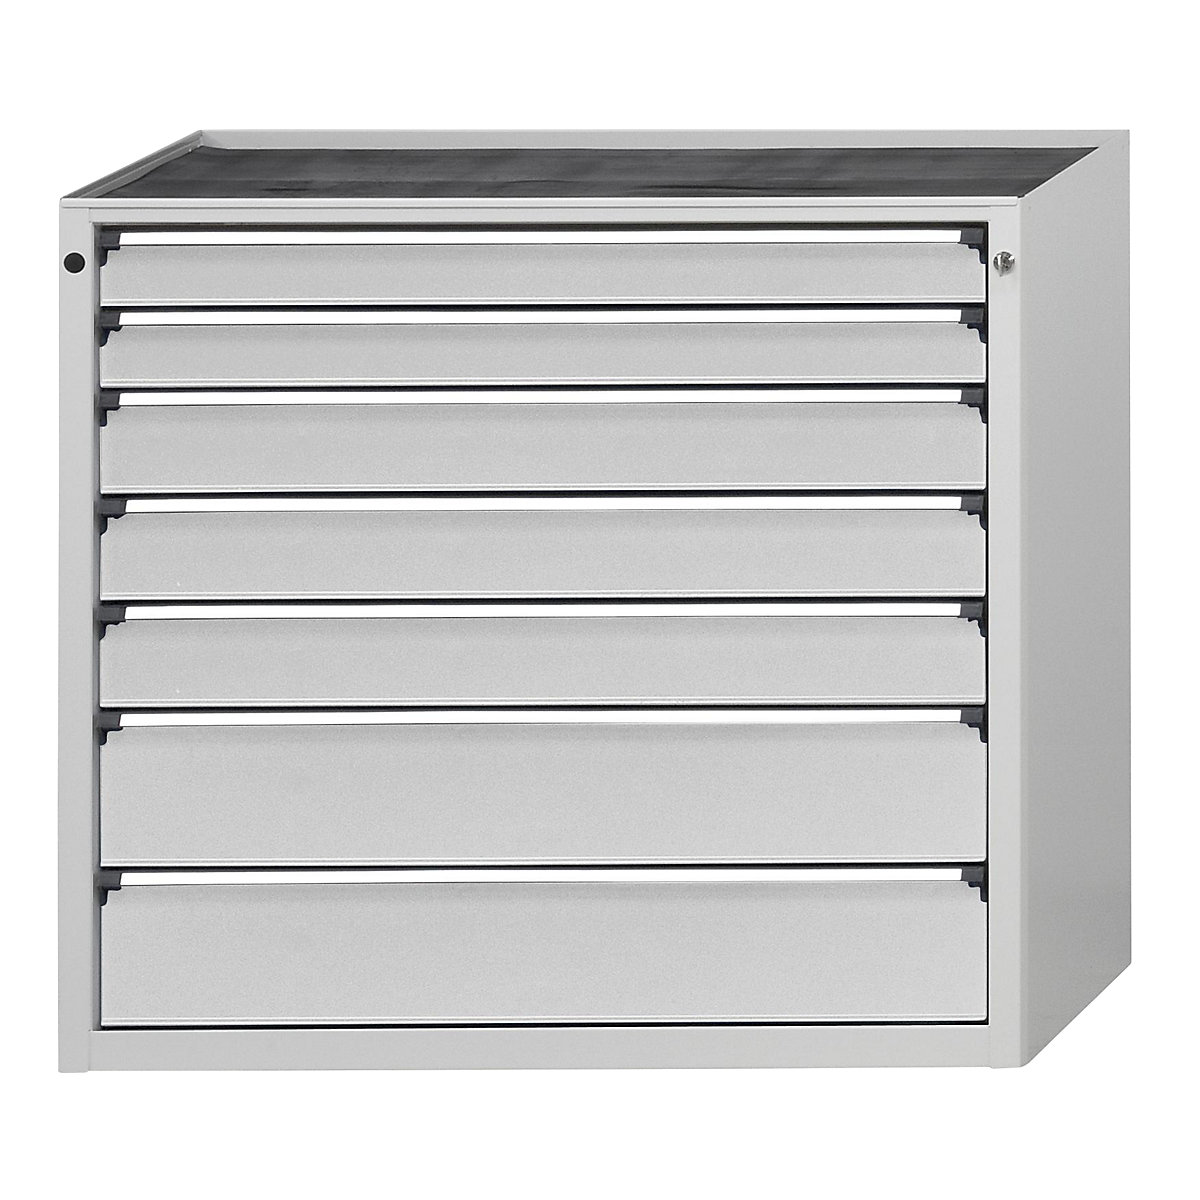 ANKE – Armoire à tiroirs, l x p 1060 x 675 mm, 7 tiroirs, hauteur 980 mm, façade gris clair